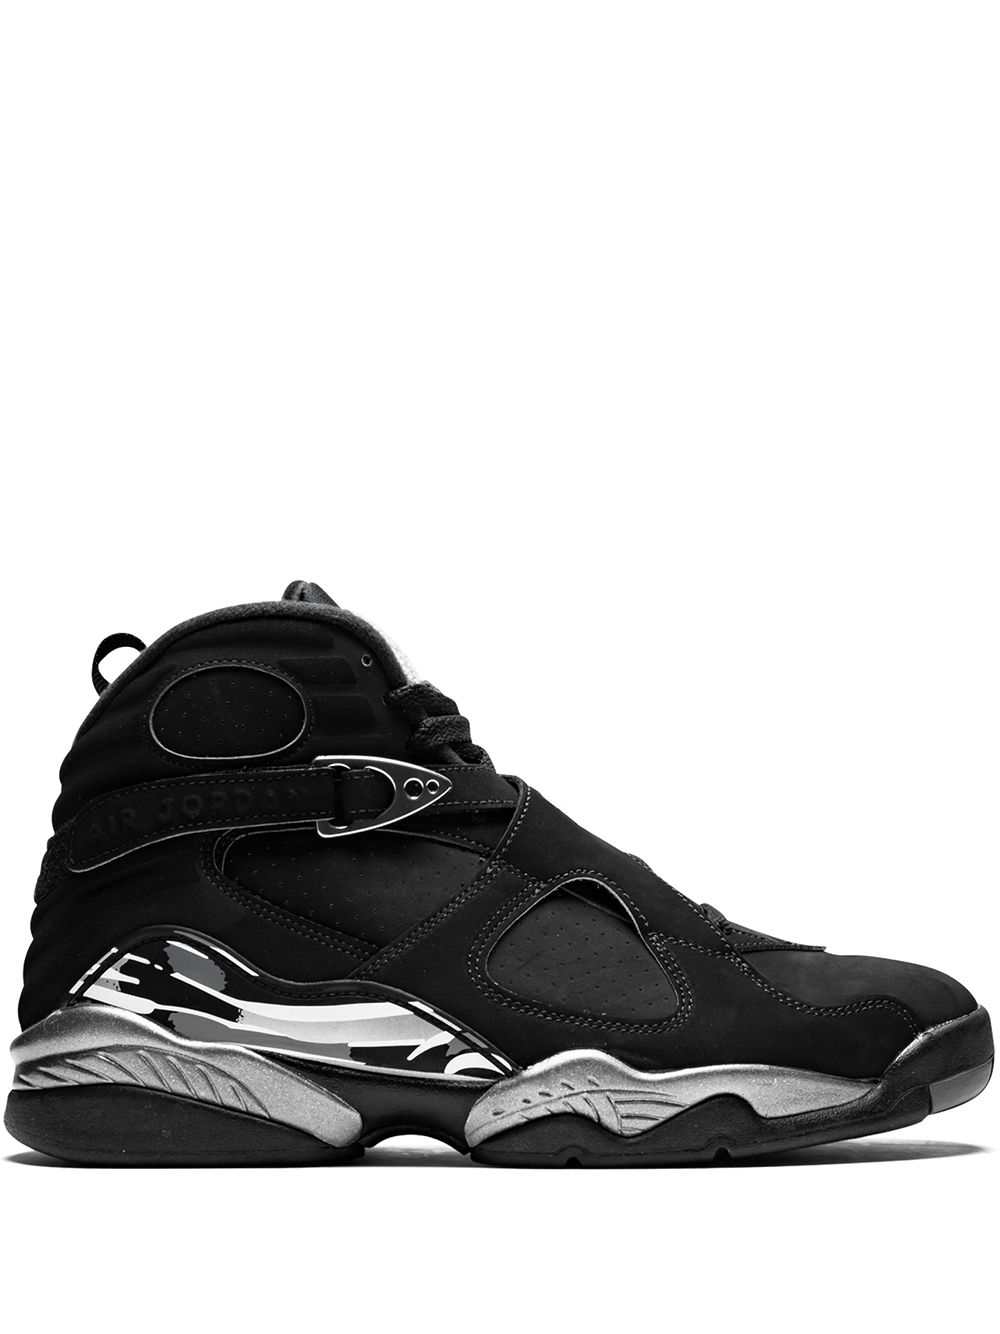 Jordan Air Jordan 8 Retro "Chrome" sneakers - Black